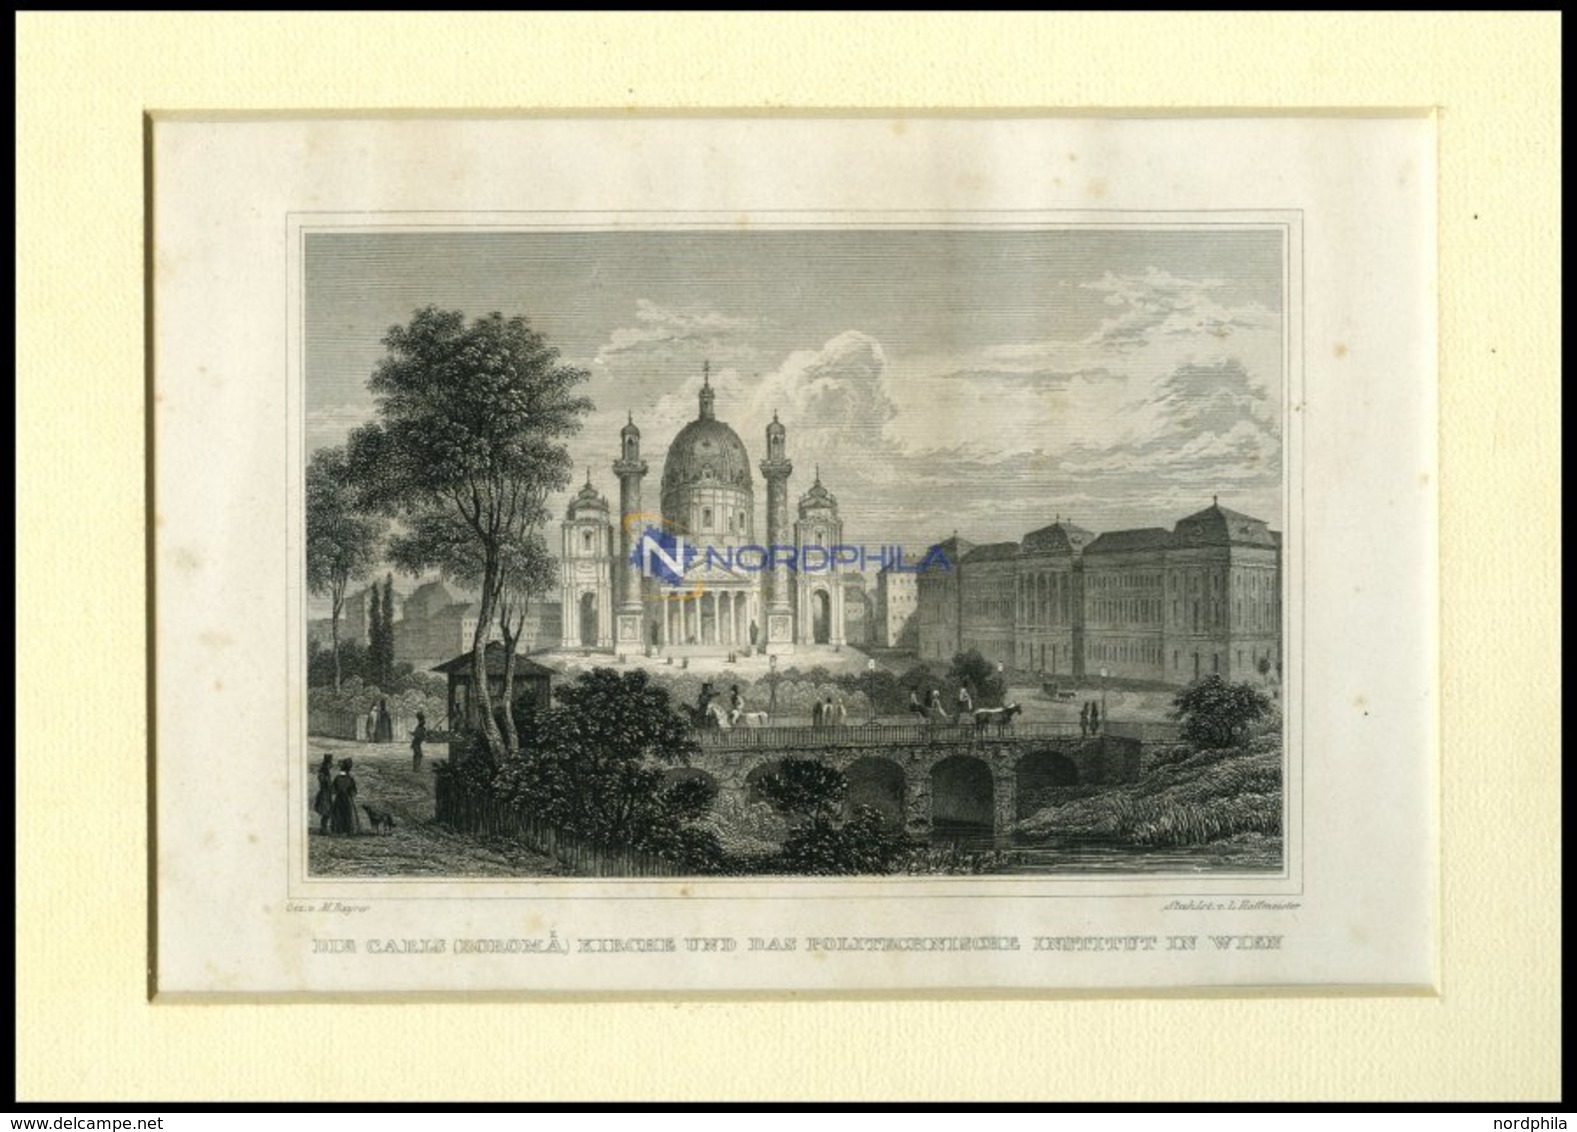 WIEN: Die Carls (Boromä) Kirche Und Das Politechnische Institut, Stahlstich Von Bayrer/Hoffmeister, 1840 - Litografía